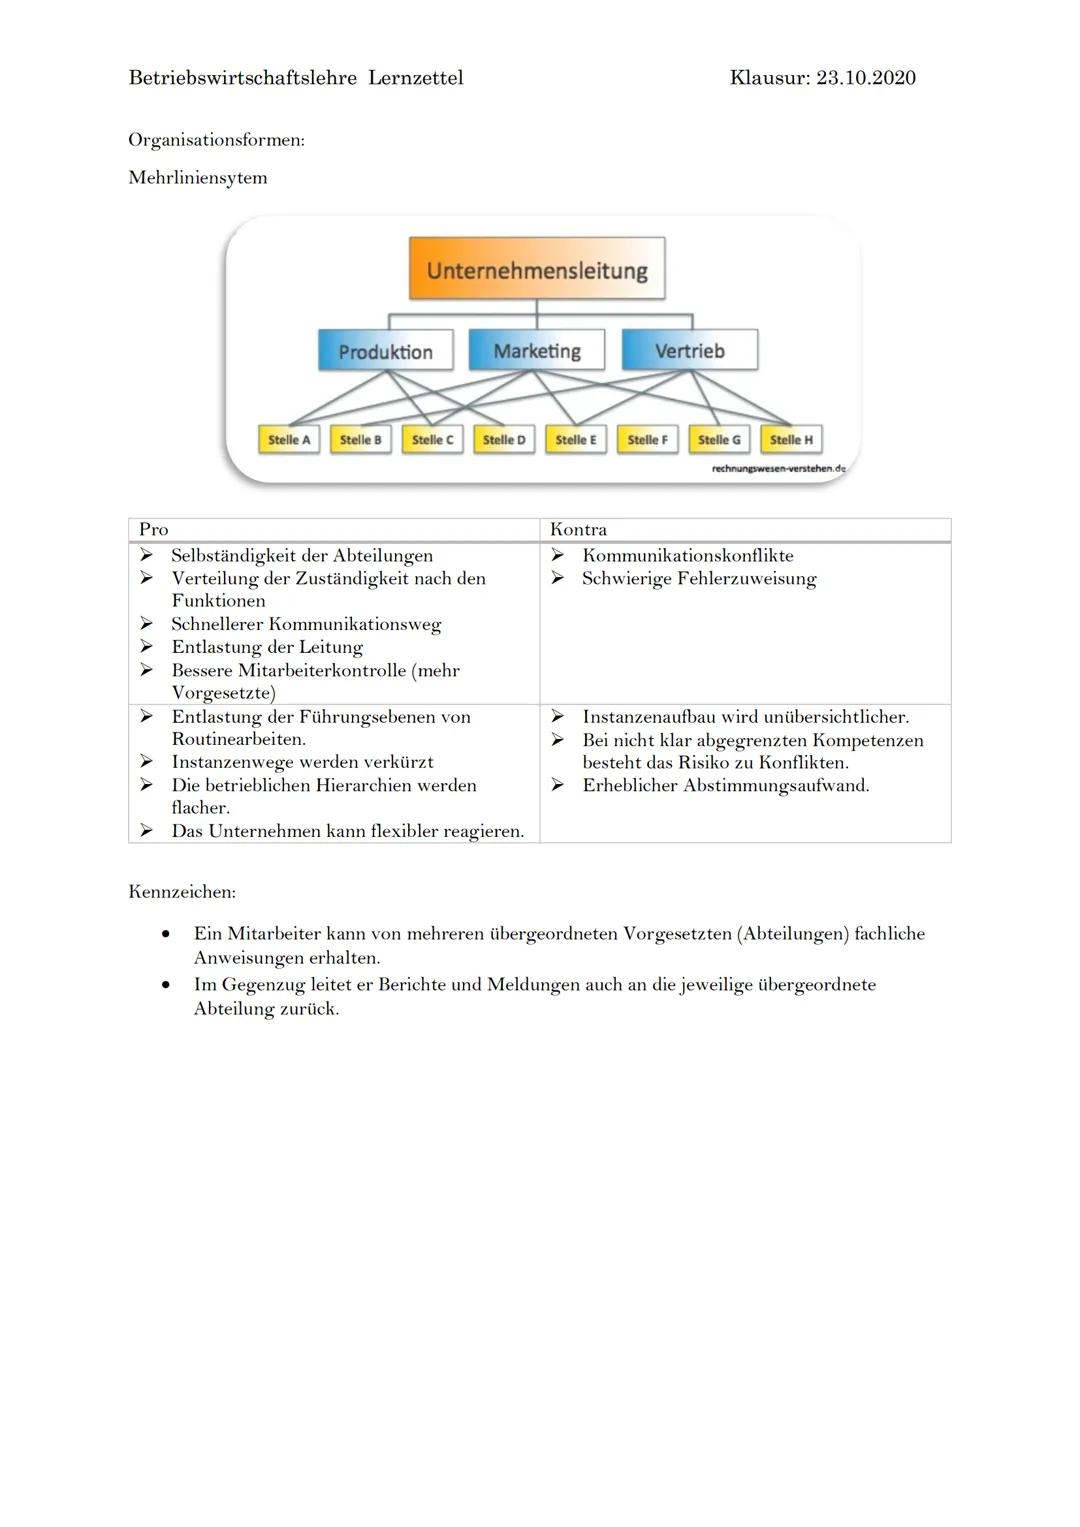 Betriebswirtschaftslehre Lernzettel
Organisationsformen:
Einliniensystem
Pro
Klare Kompetenzen
➤ Klare Kommunikationswege
Überblick der Leit